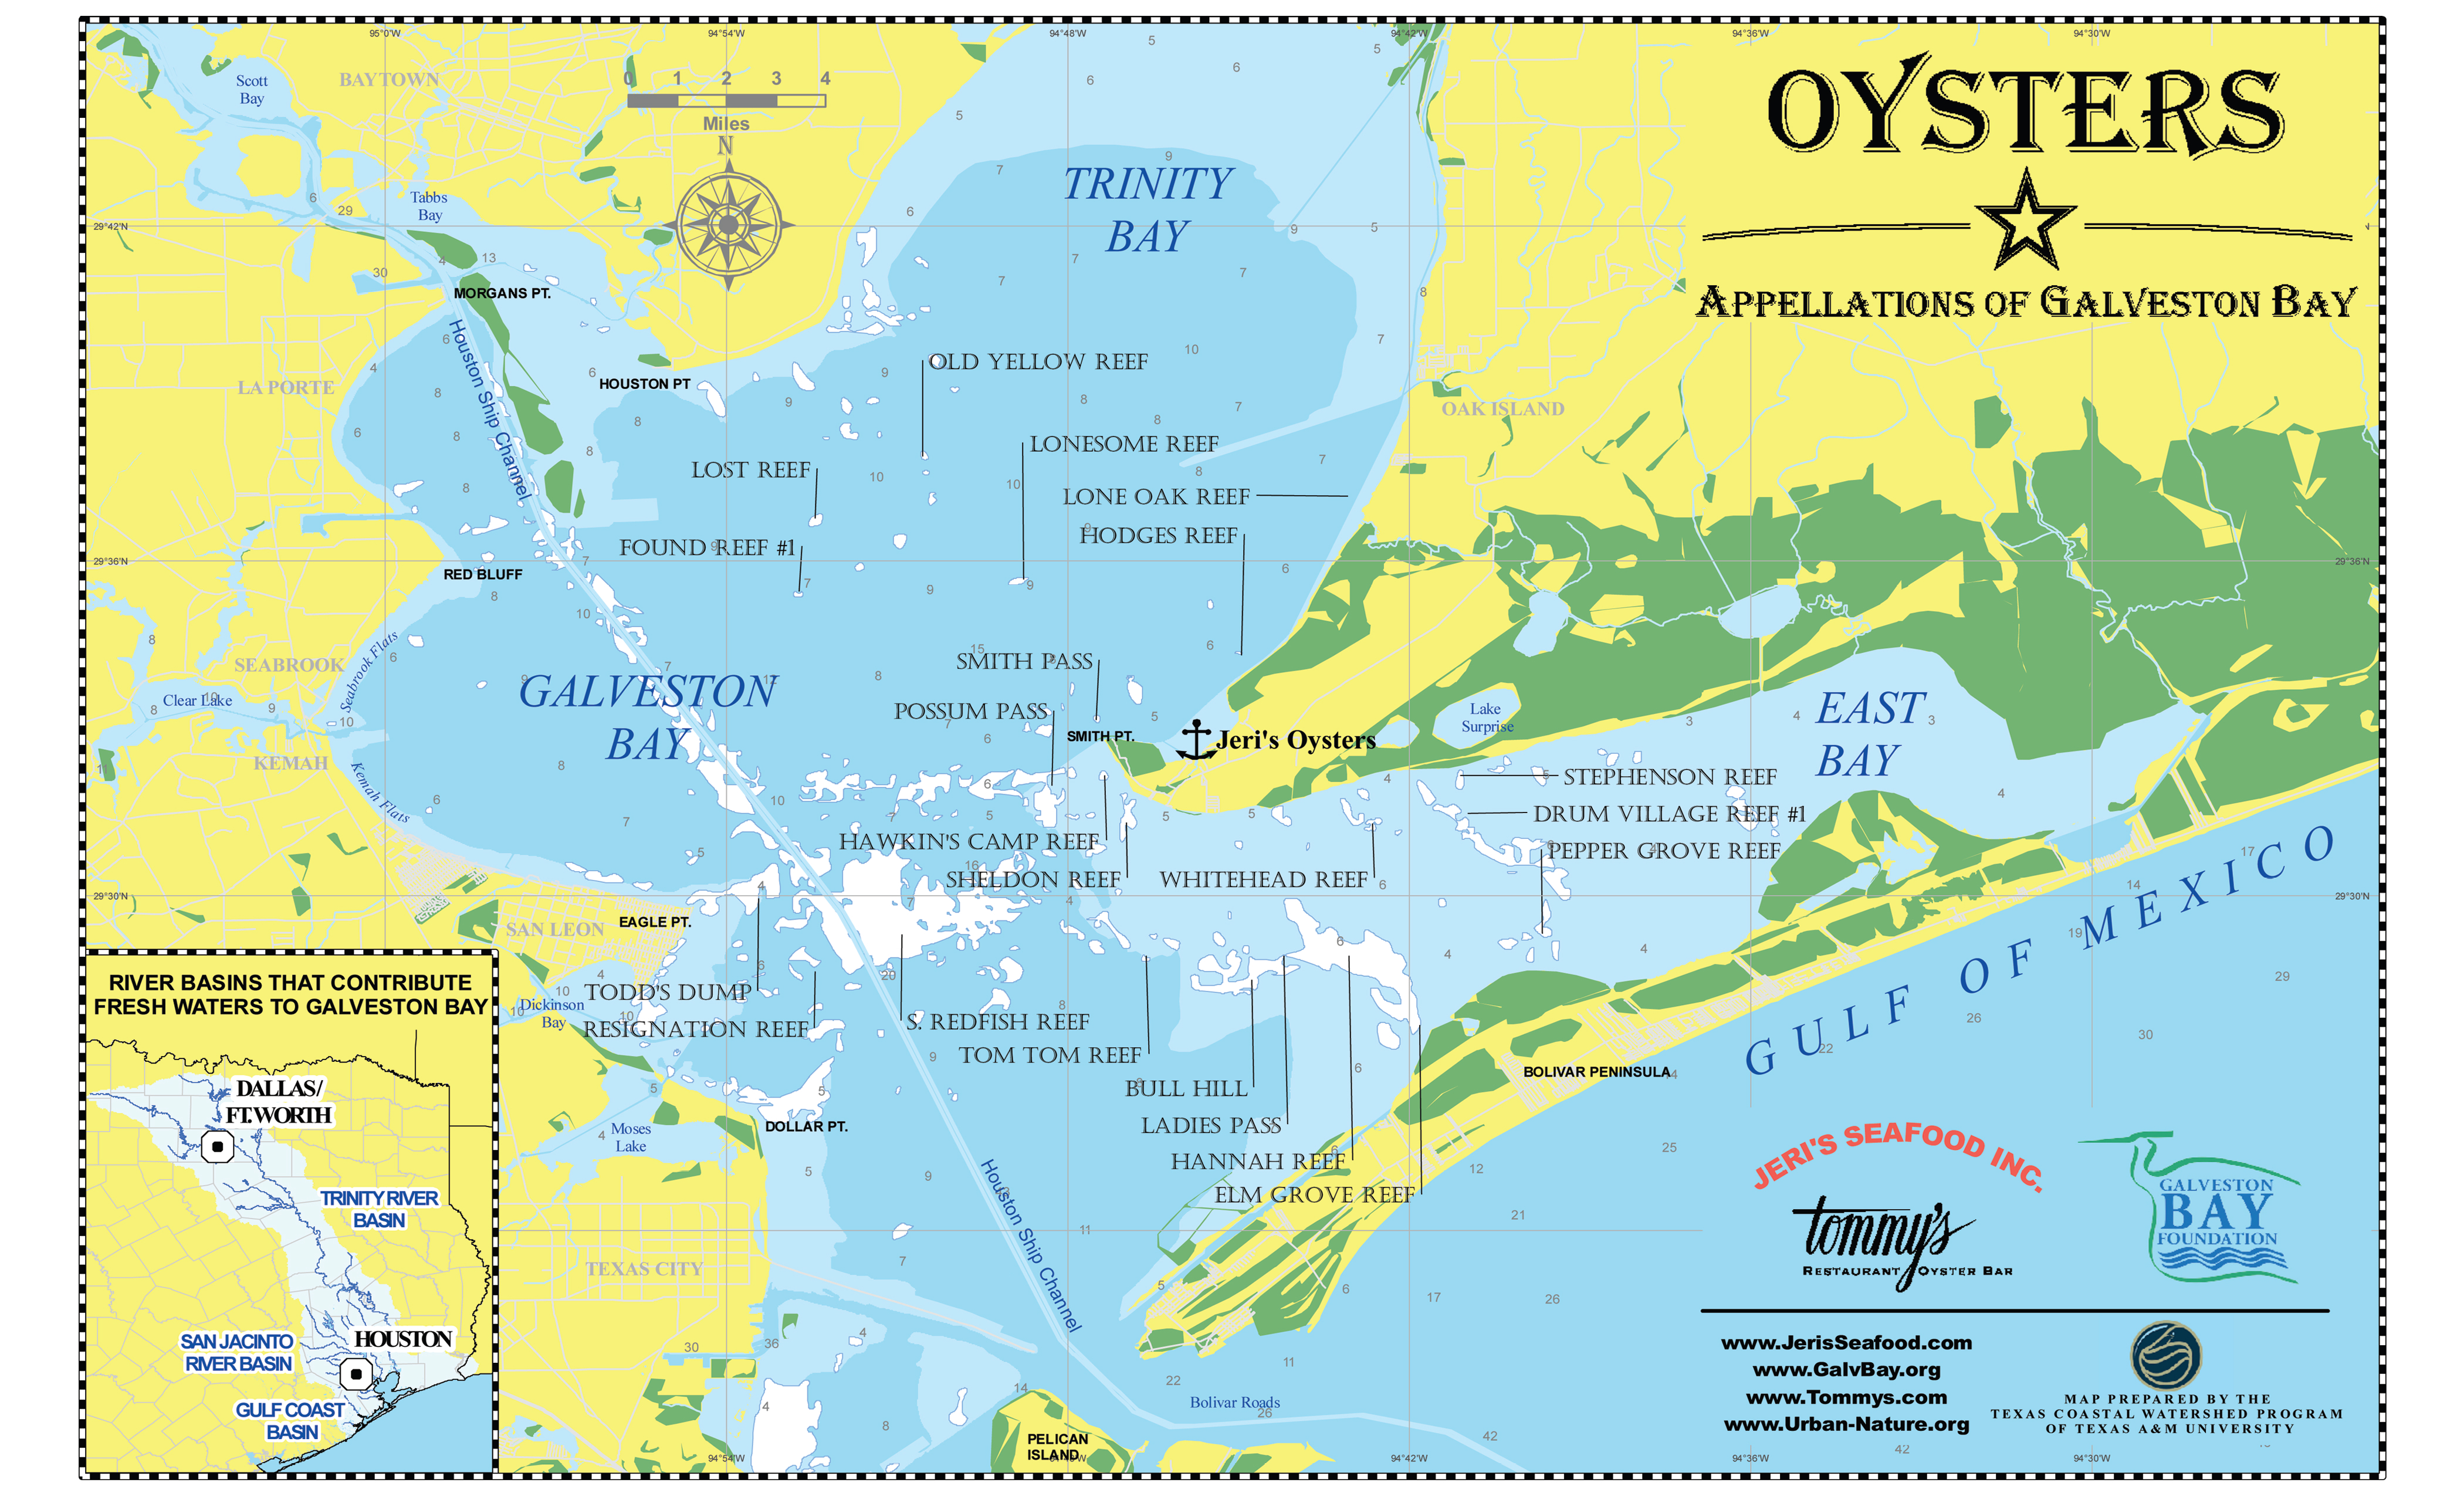 Looking Into The Crystal Ball: 2014-15 Galveston Bay Oyster Season - Texas Galveston Map